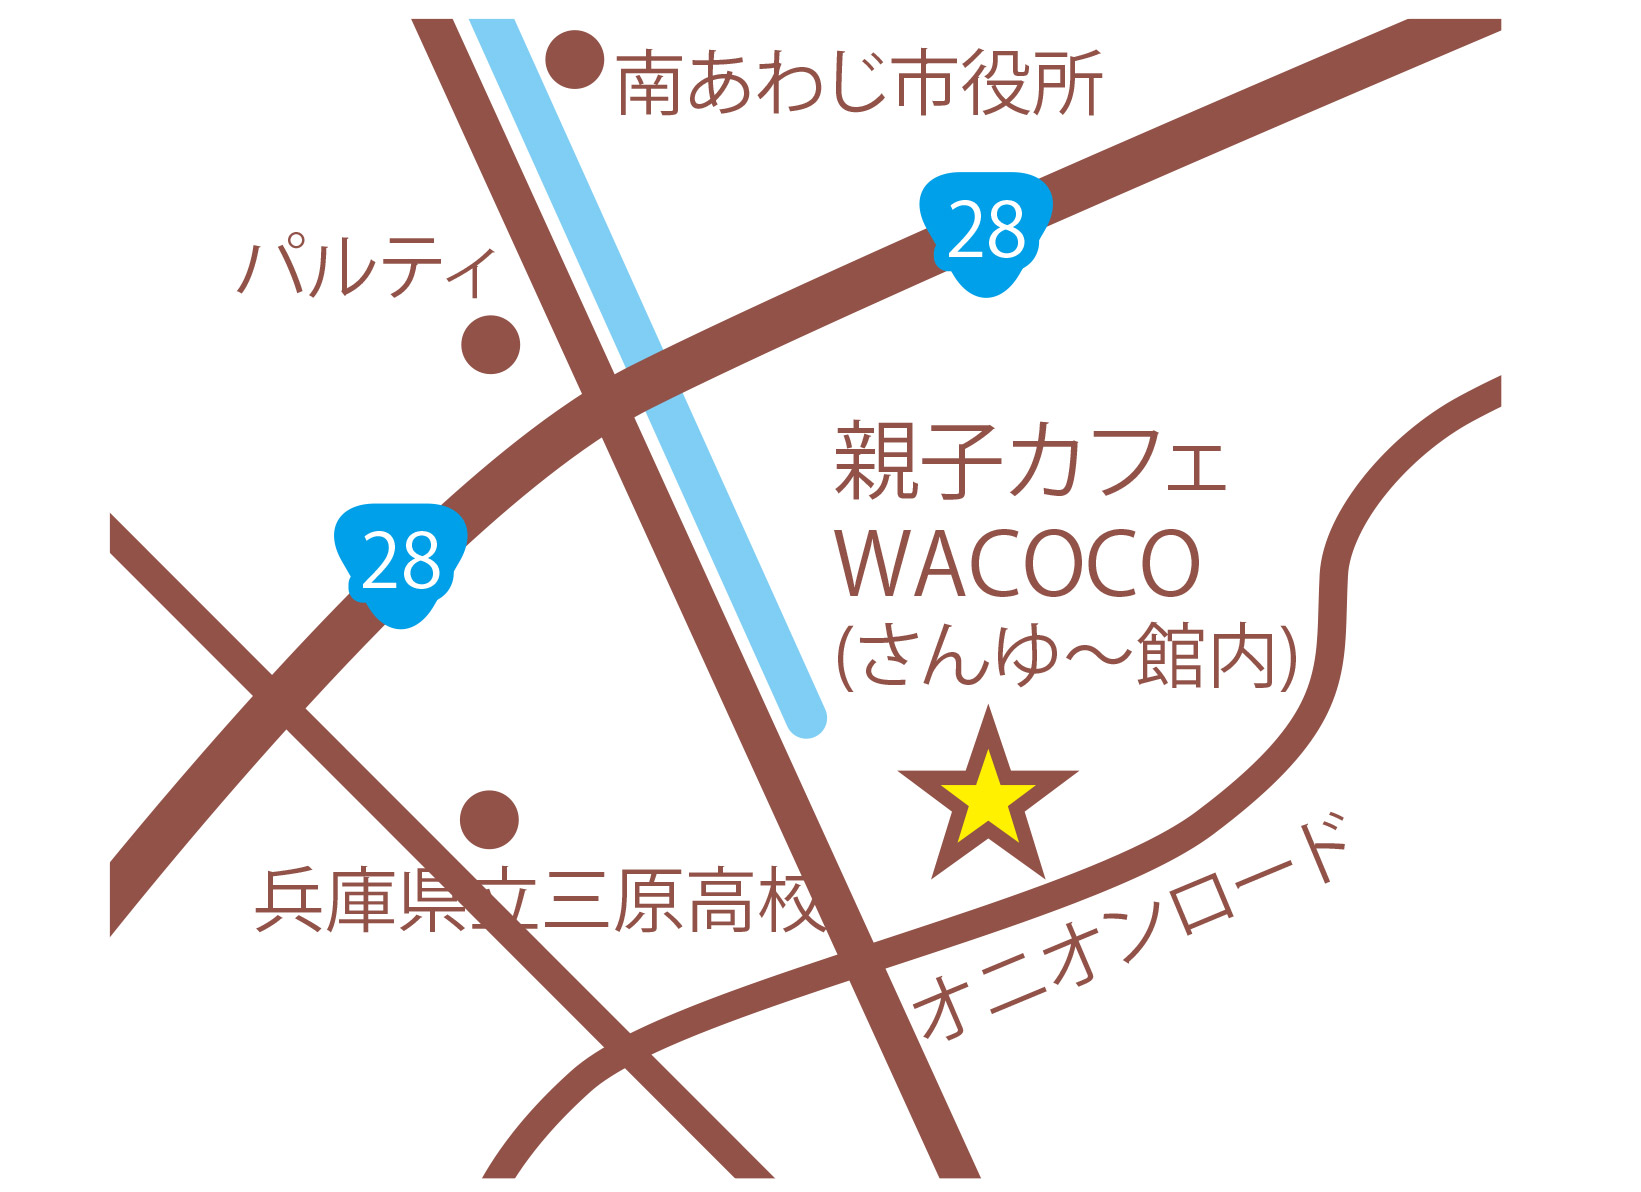 Family Cafe Wacoco 公式